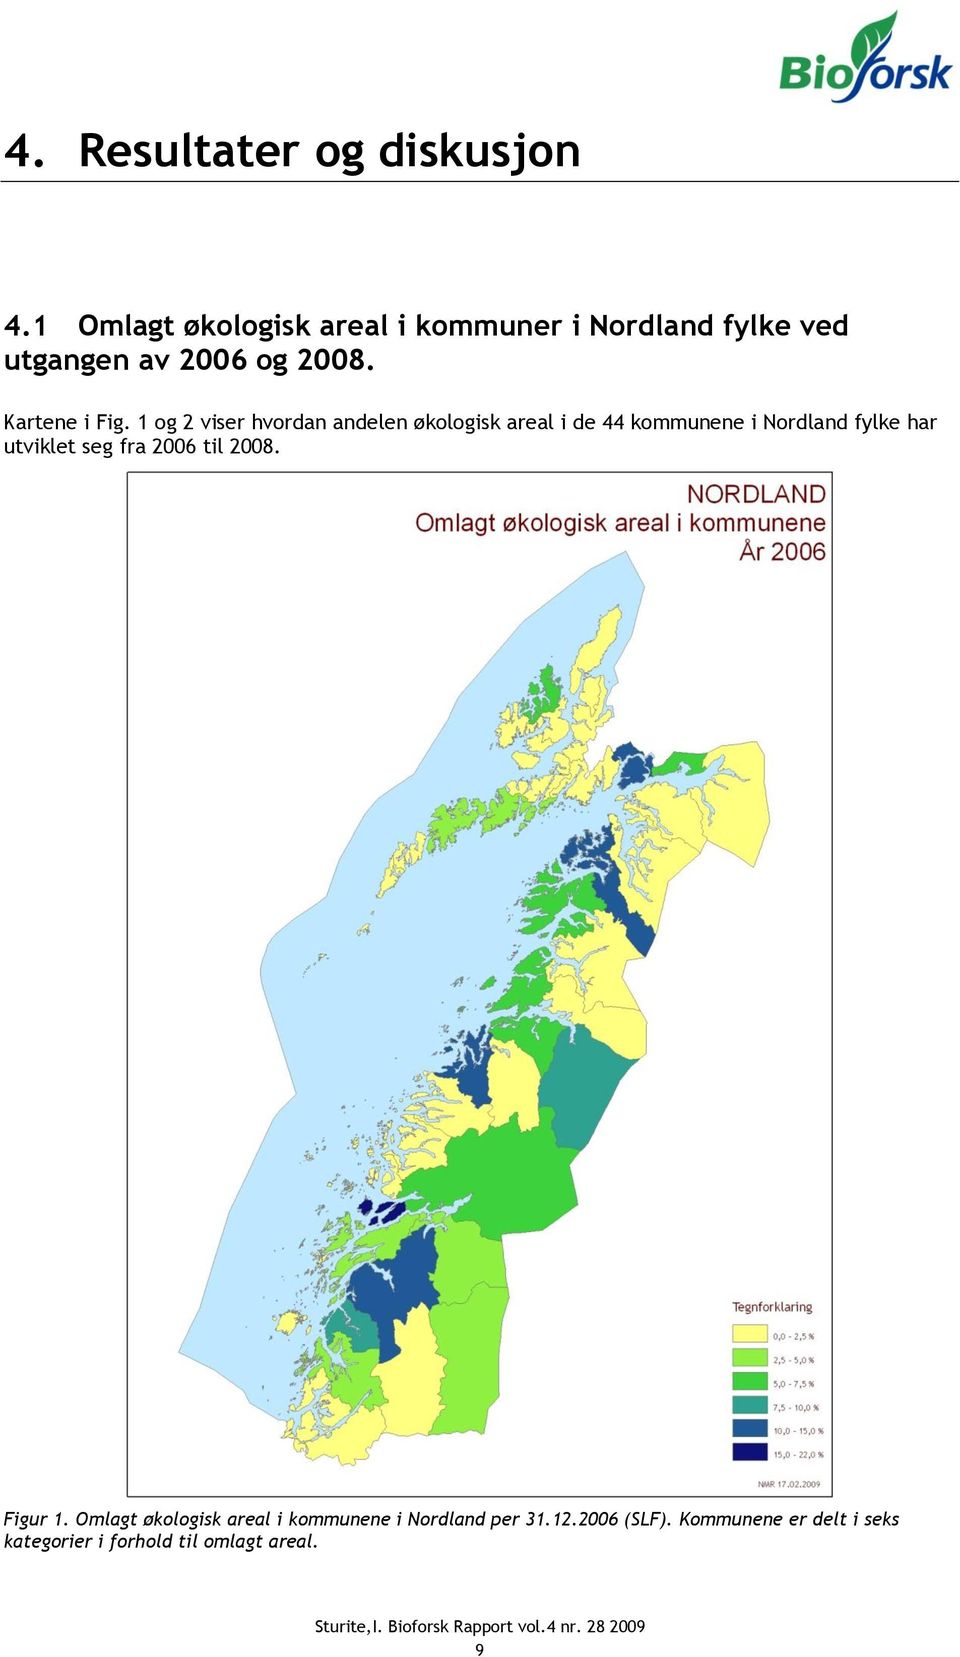 1 og 2 viser hvordan andelen økologisk areal i de 44 kommunene i Nordland fylke har utviklet seg fra 2006